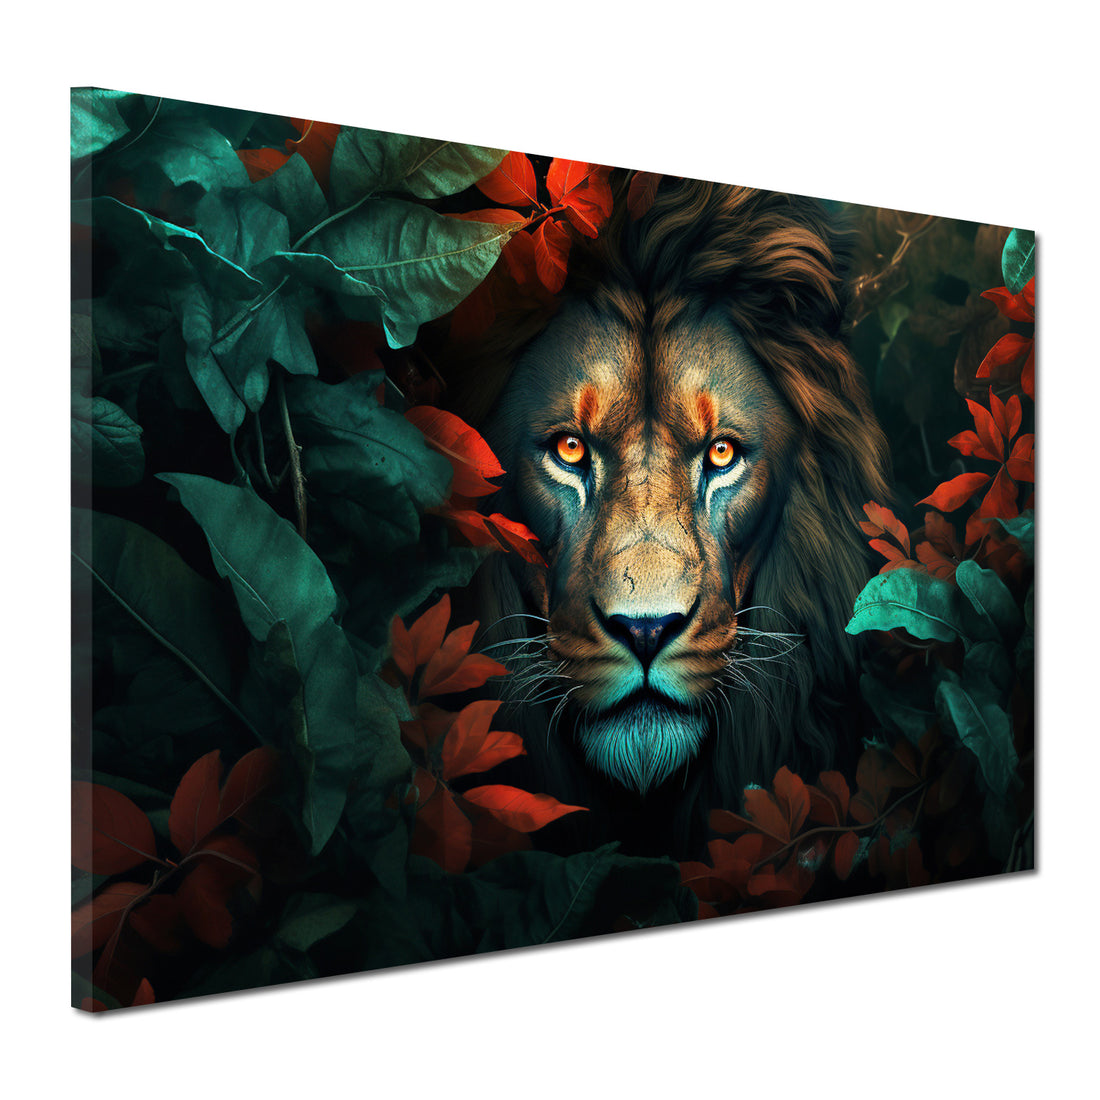 Wandbild Löwen im Dschungel, umgeben von Blättern und Blumen